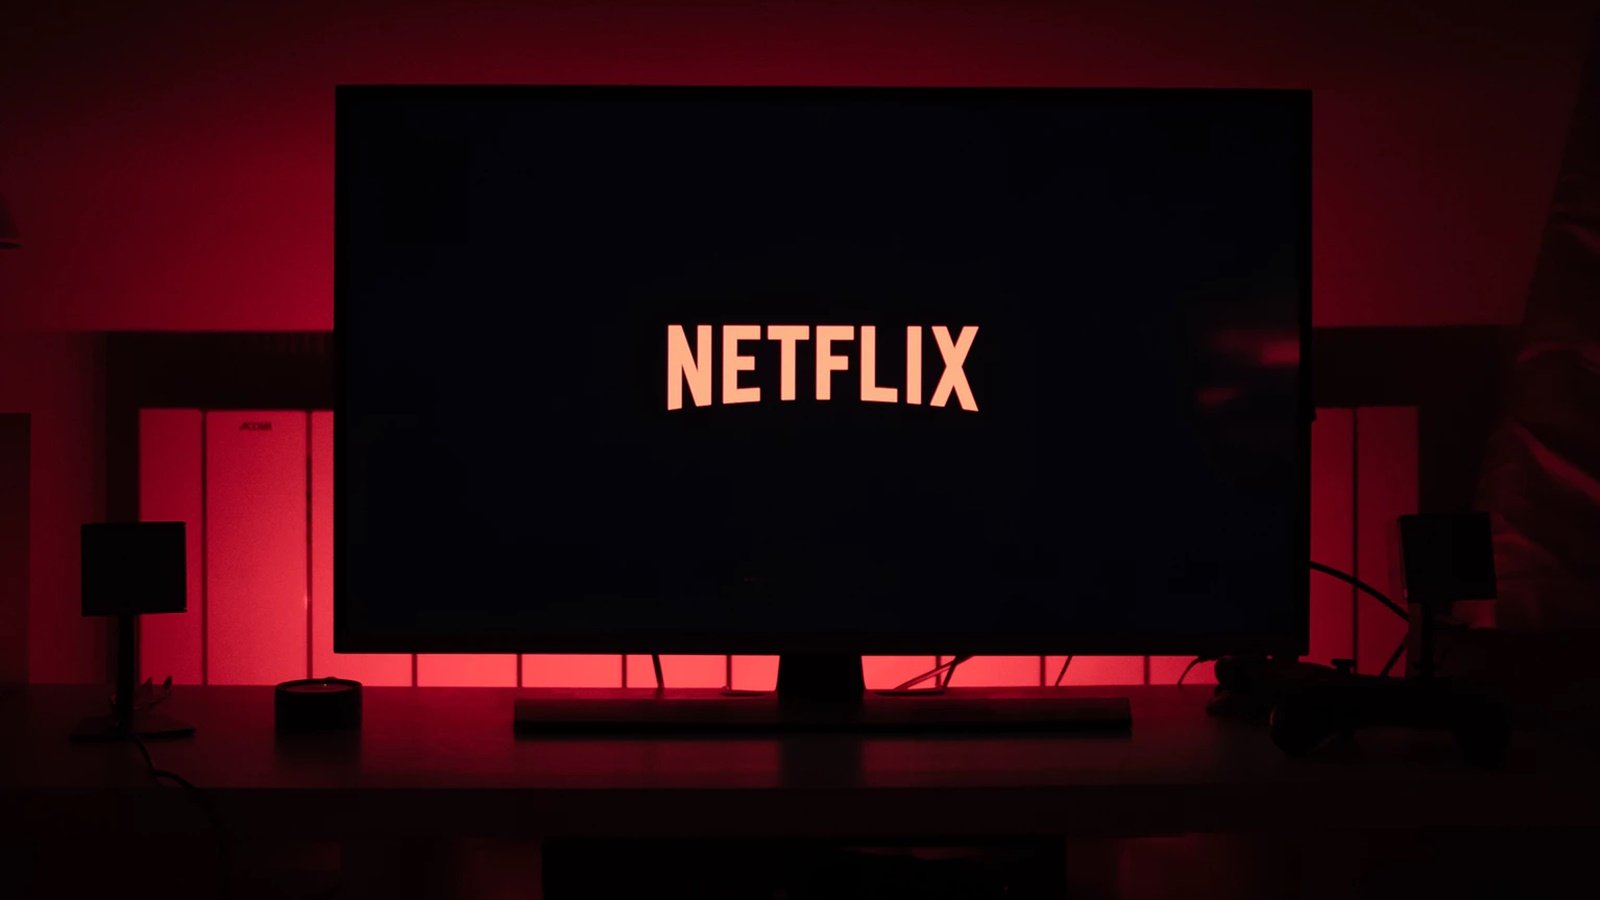 Netflix subirá precios junto con otras plataformas digitales